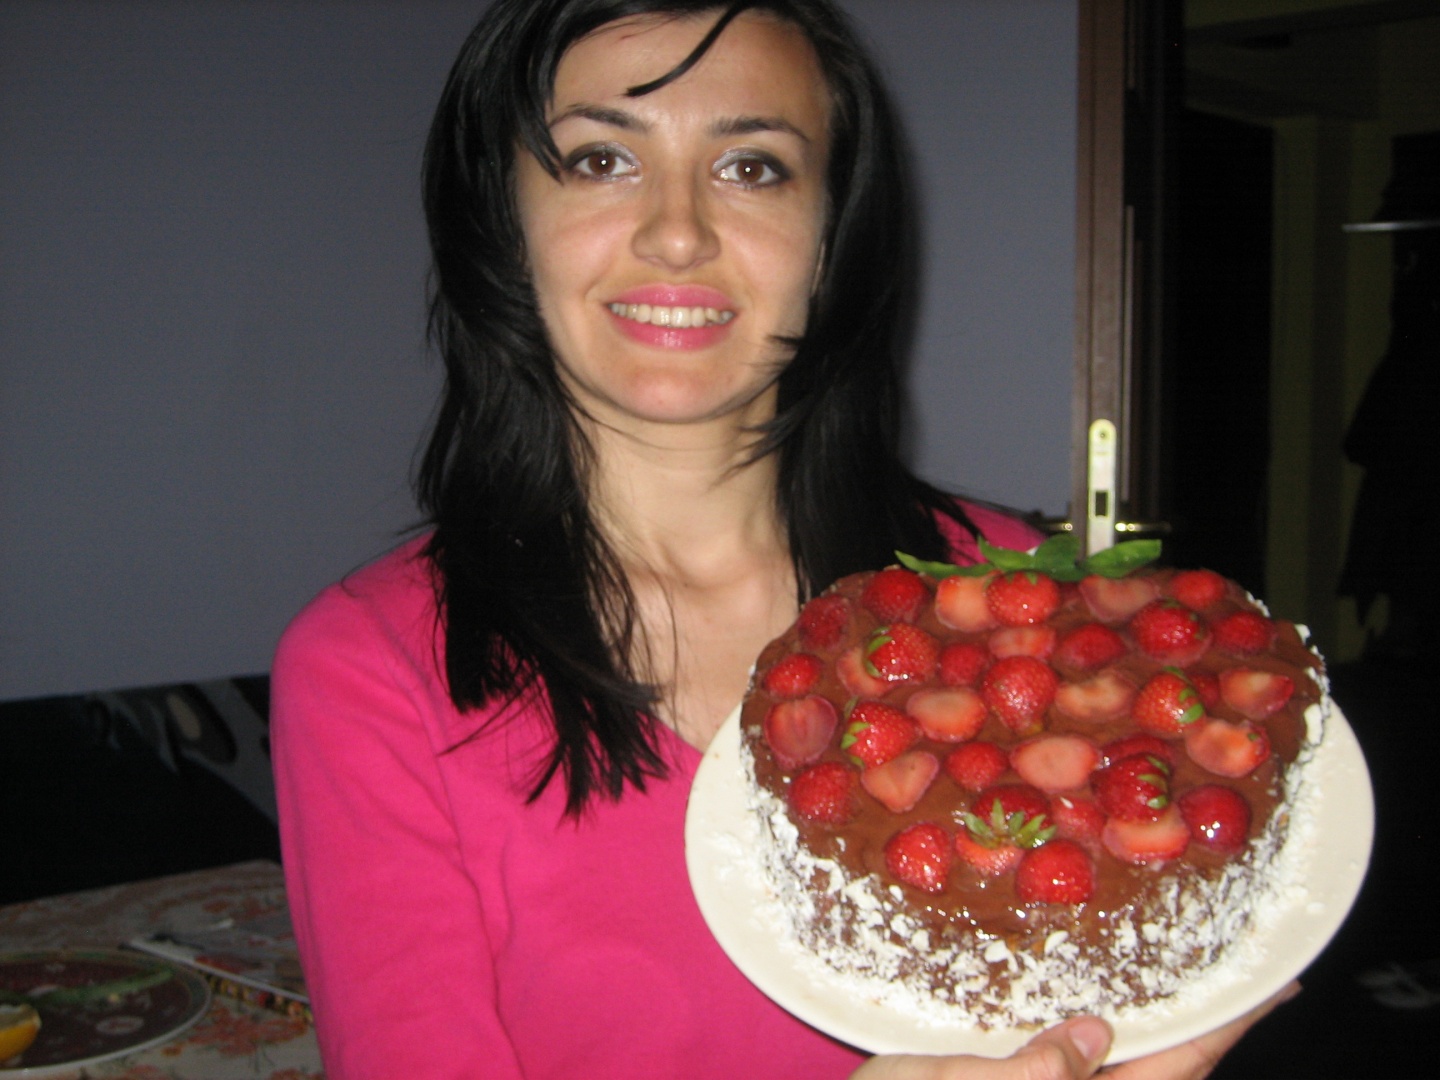 Tort rafinat cu căpșuni și ciocolată